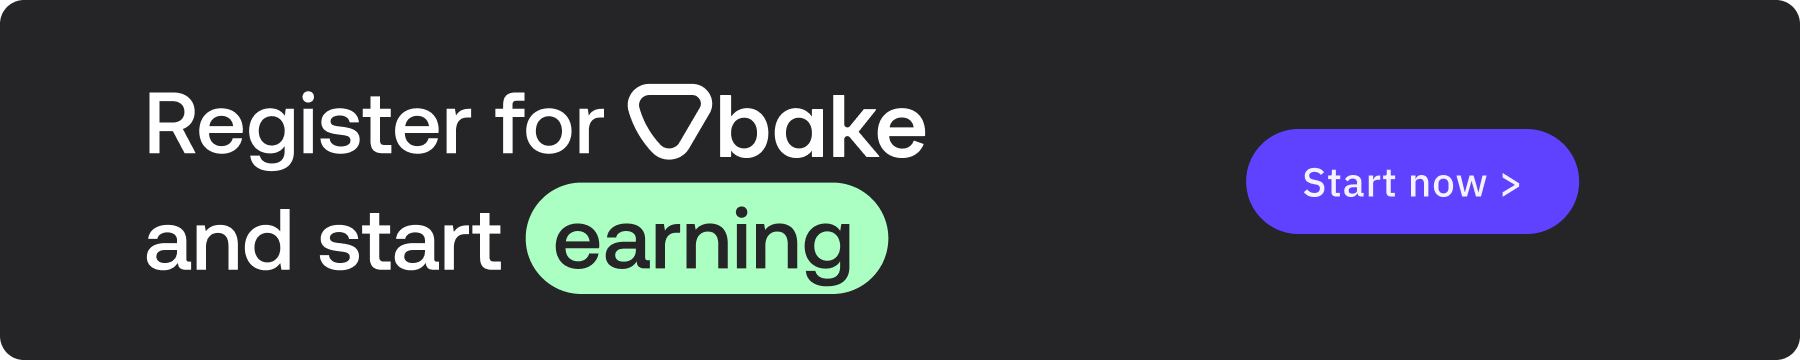 Register for Bake and start earning - Start now